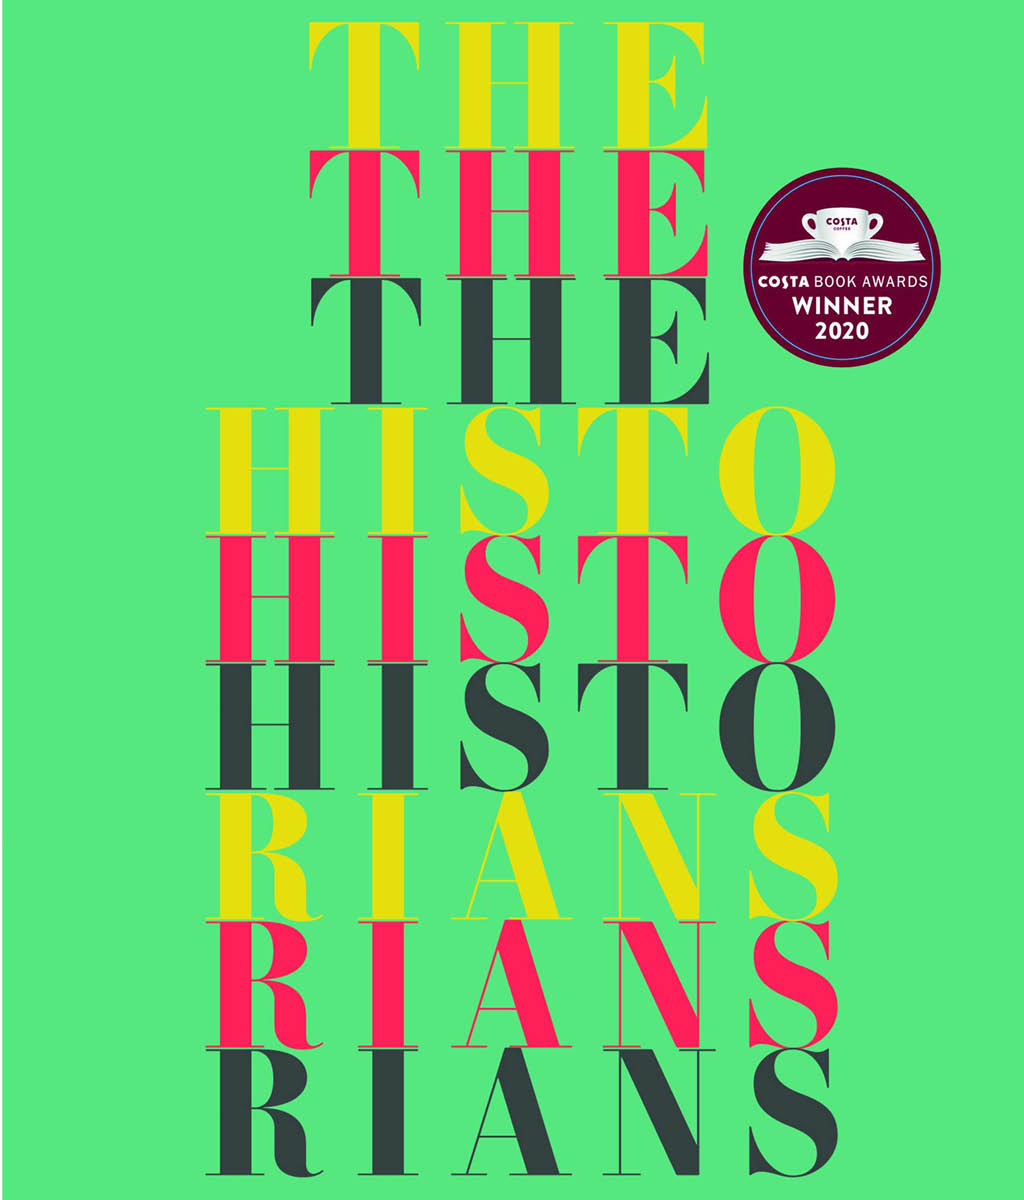 The Historians by Eavan Boland